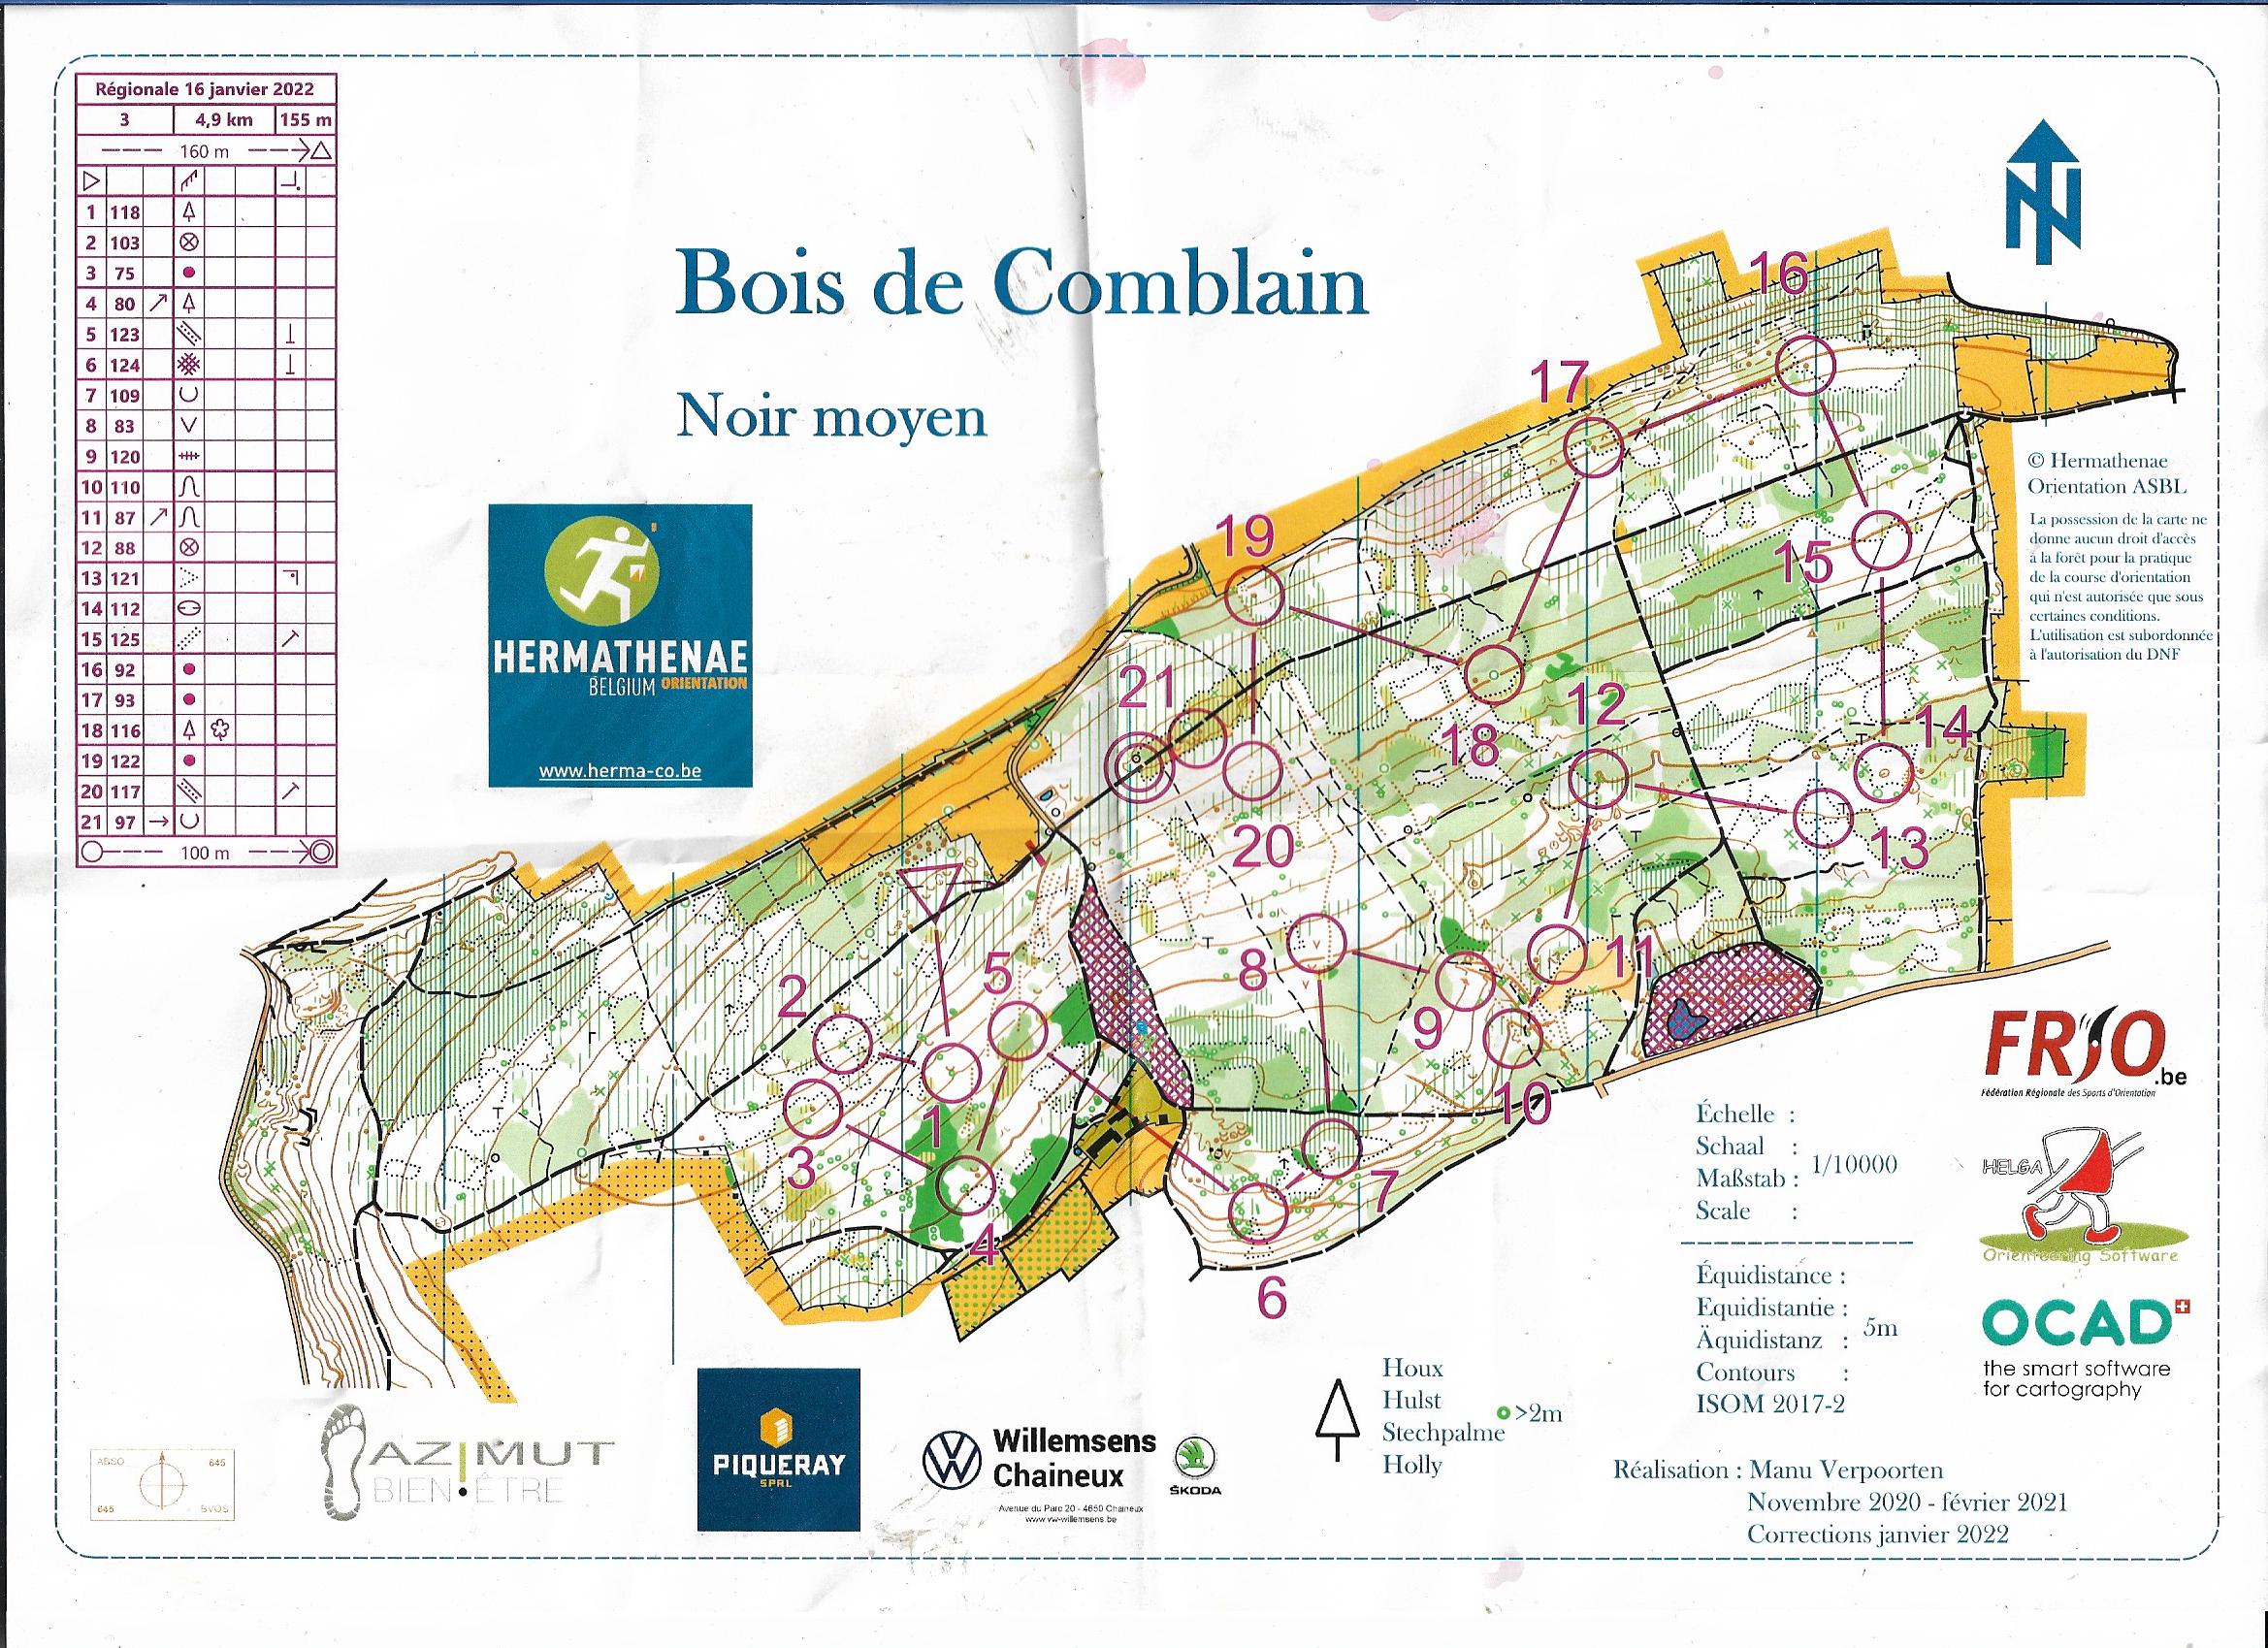 Bois de Comblain (16-01-2022)